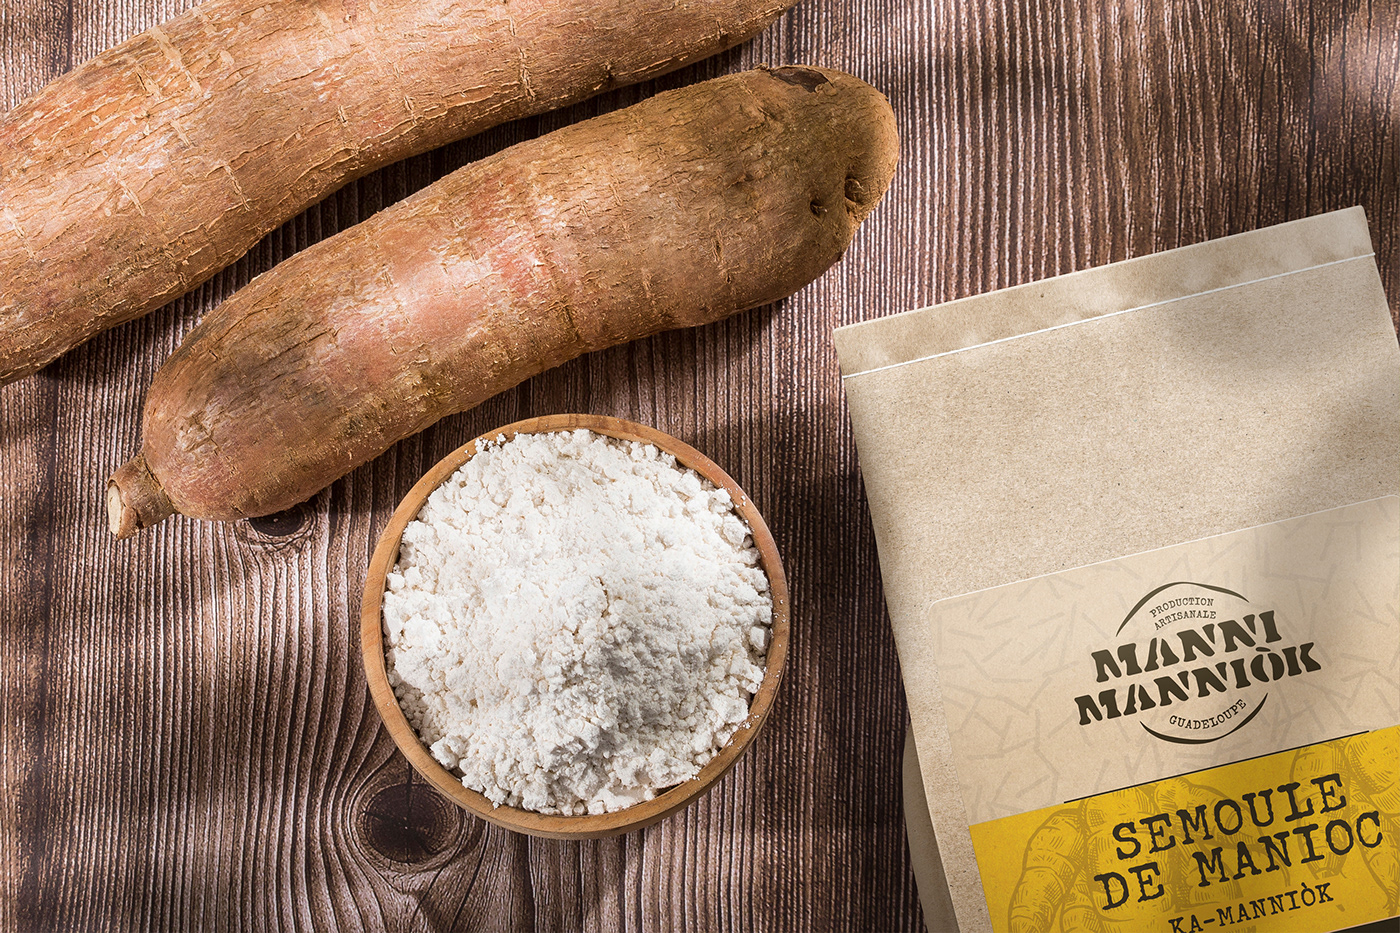 artisanal Caribbean étiquettes flour Guadeloupe identité visuelle kraft paper Label manioc Packaging